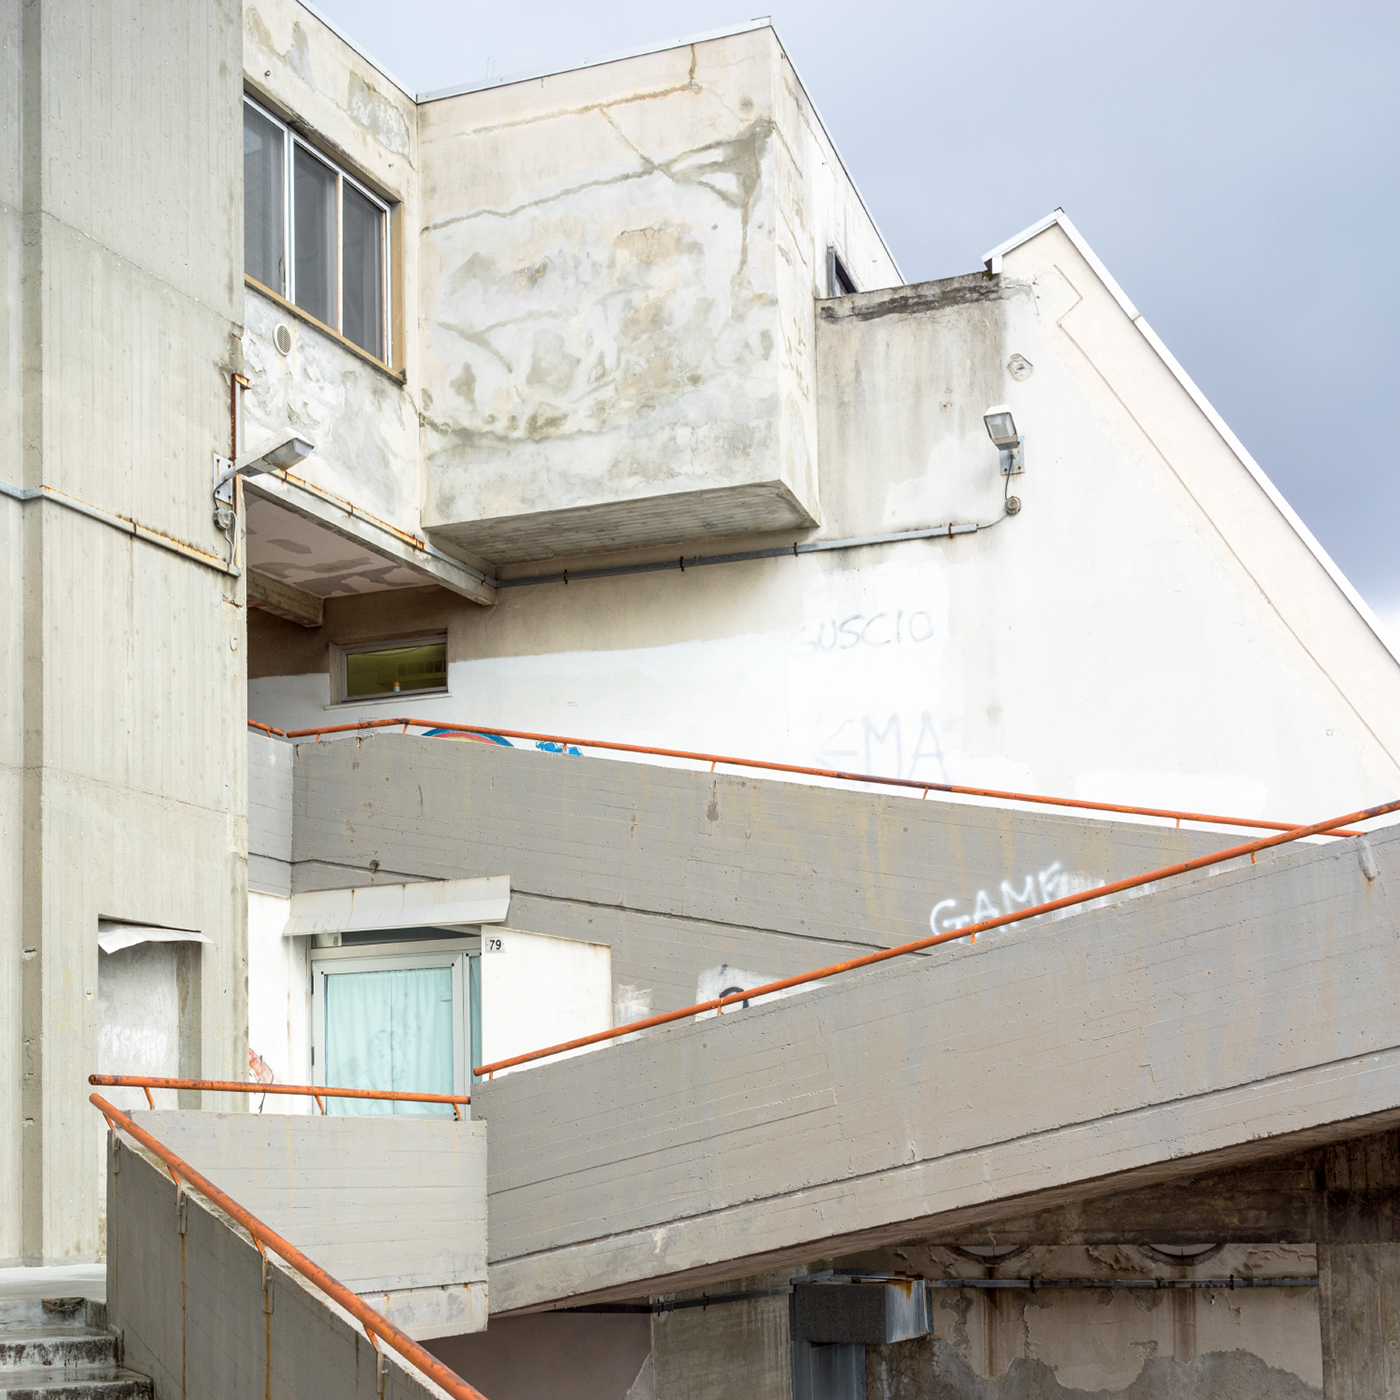 architectural photography Urban Brutalism modernism Corviale nuovo corviale forte quezzi aldo rossi Kenzo Tange berlin